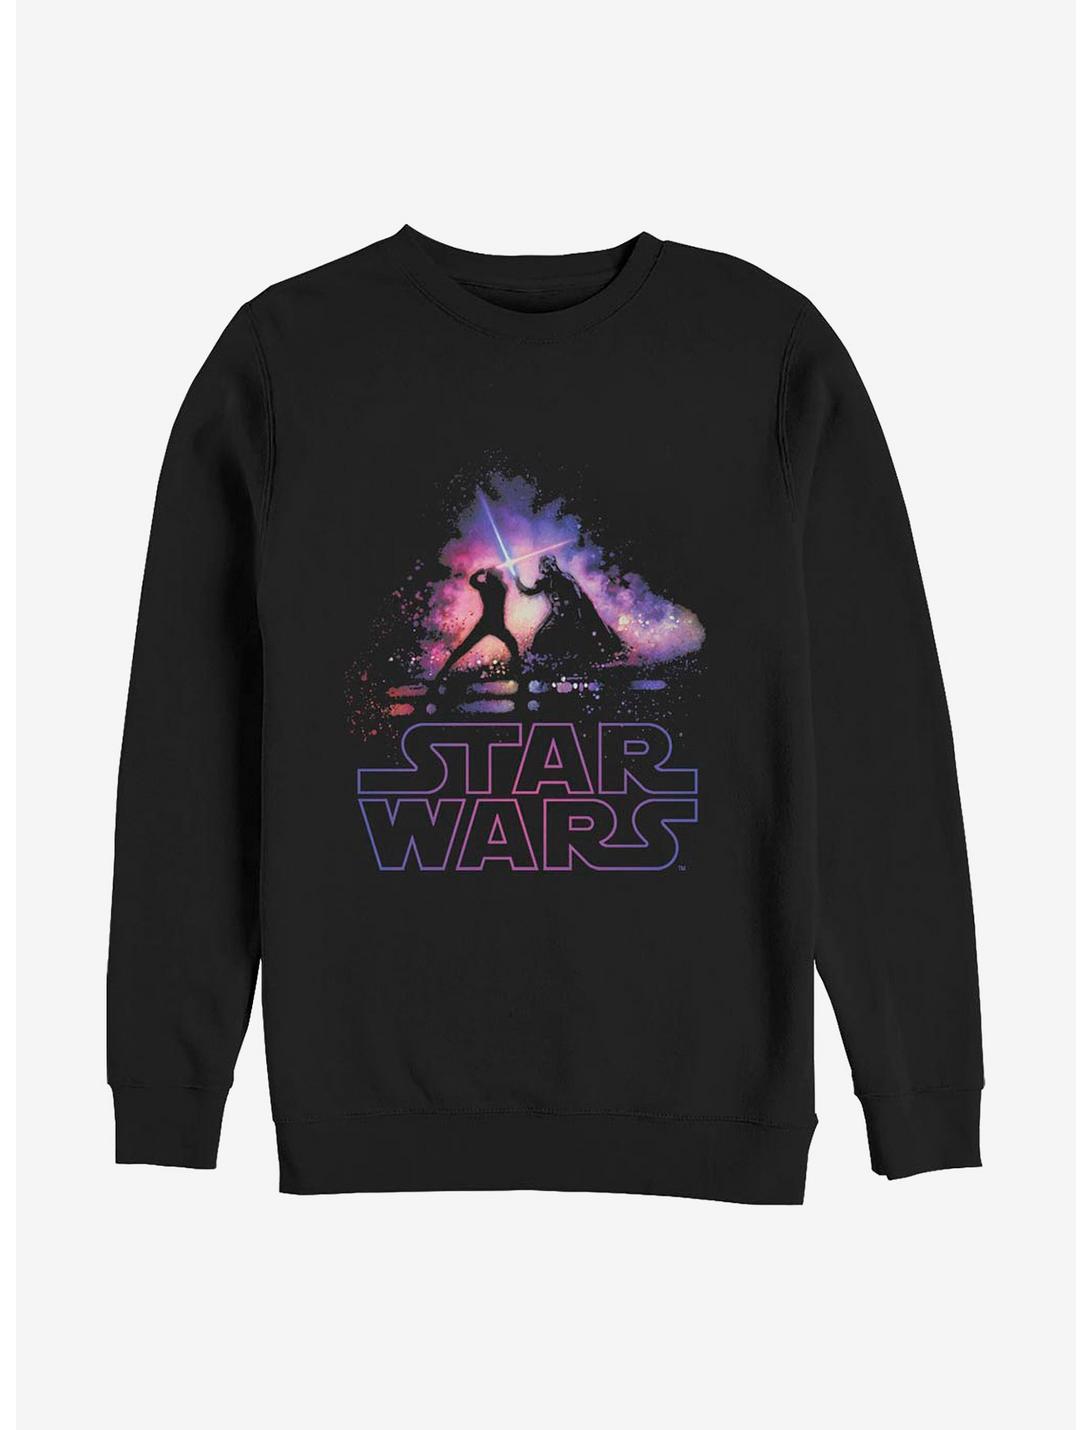 Star Wars Crossing Sabers Crew Sweatshirt, BLACK, hi-res